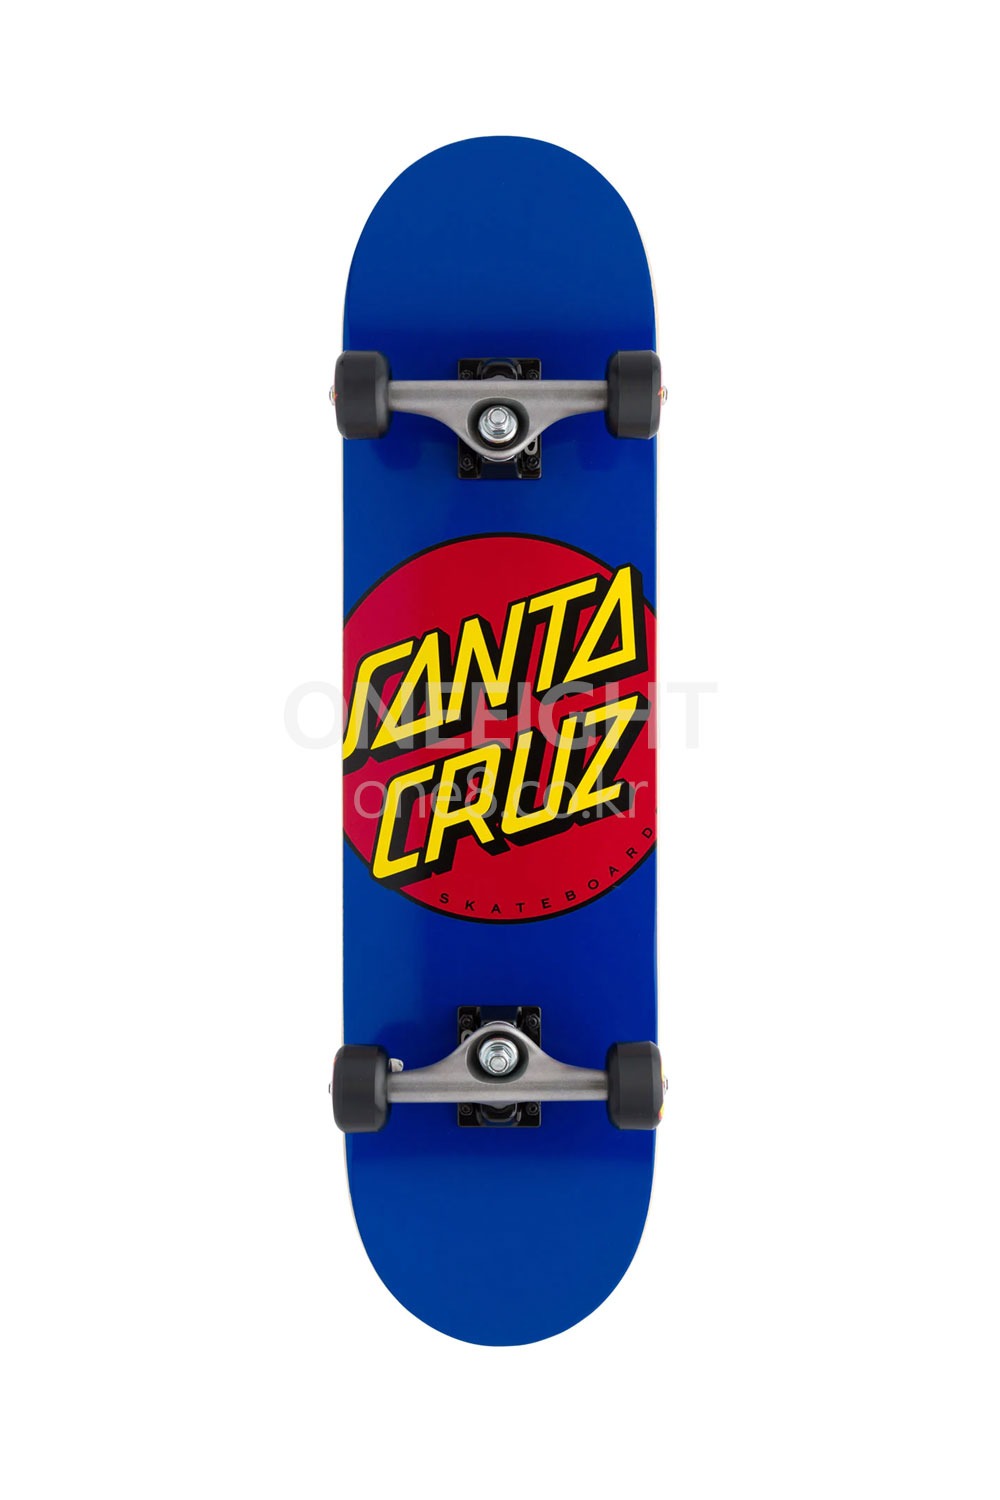 산타크루즈 스케이트보드 컴플릿 SANTA CRUZ_CLASSIC DOT FULL SK8 COMPLETES 8.00IN X 31.25IN_Z1S630600